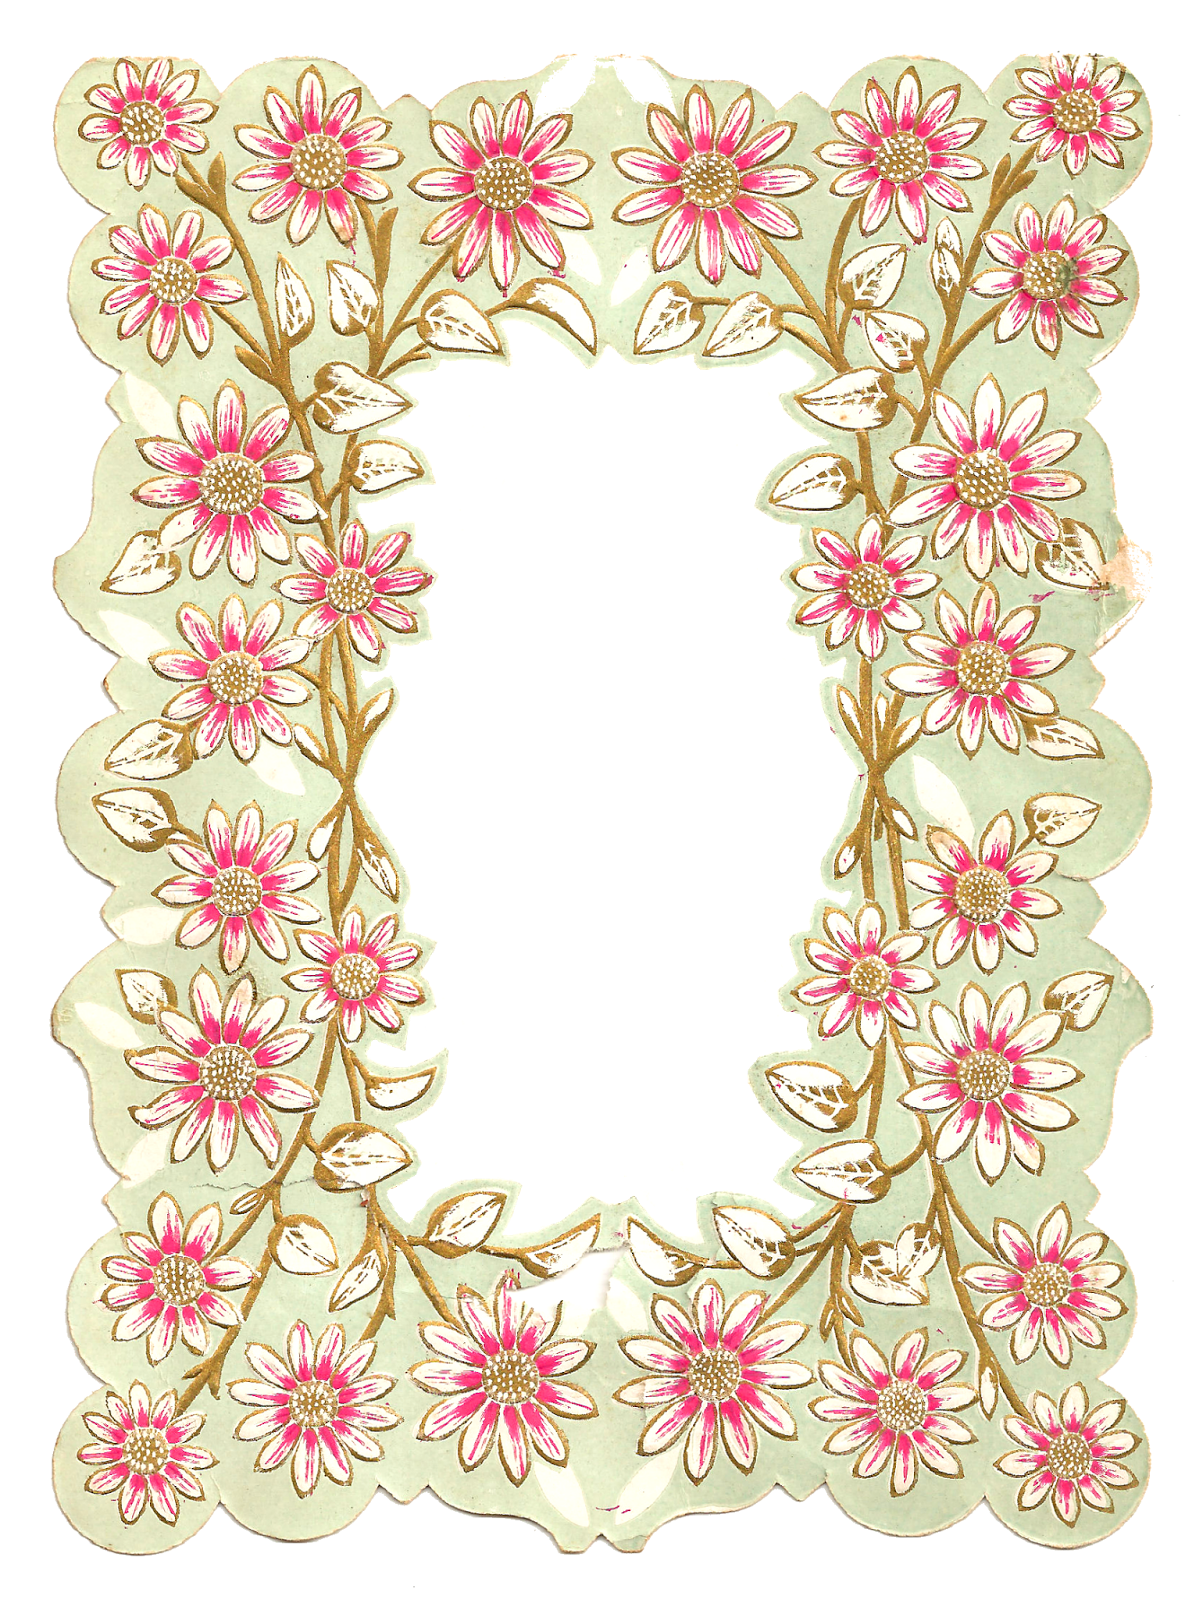 Antique Images: Digital Scrapbooking Paper Crafting Frame Flower Design